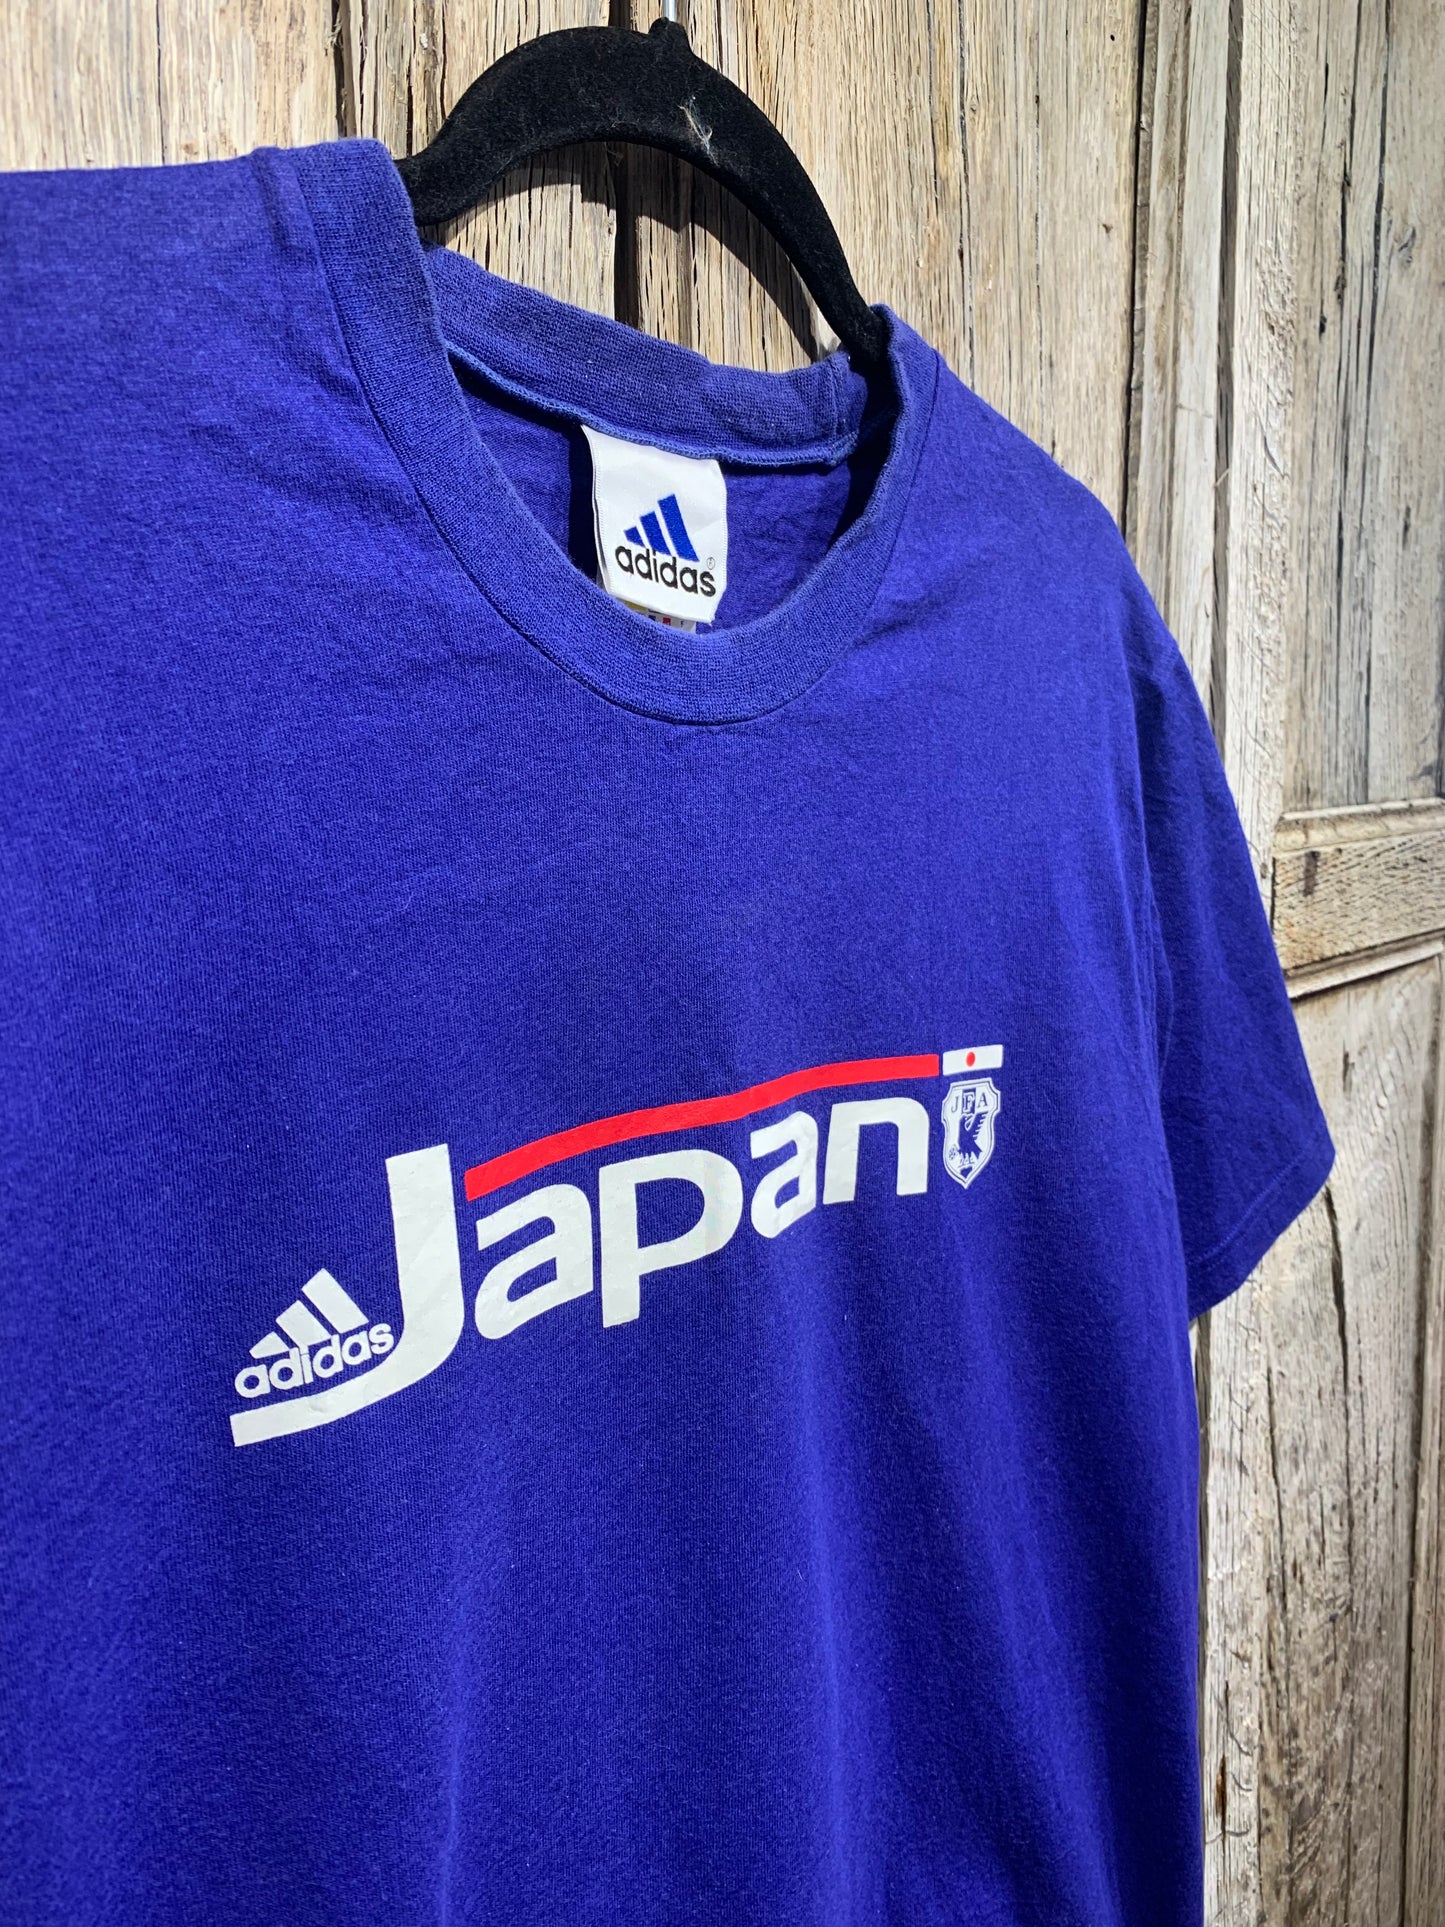 Vintage Adidas Japan Blue Tee